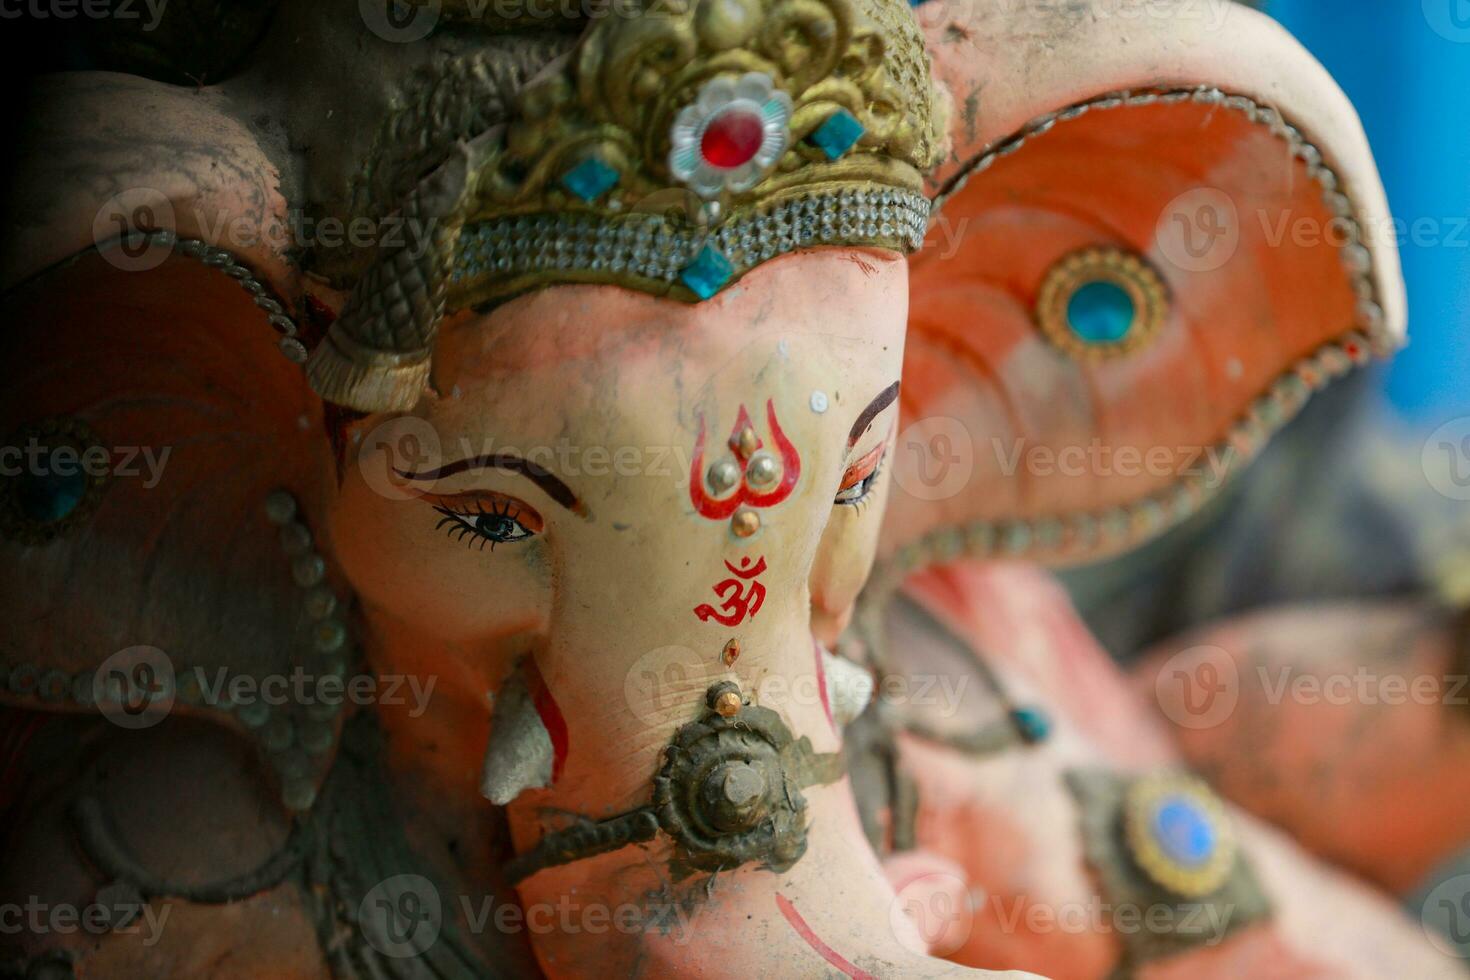 Indien Seigneur ganesha statue, idoles de Seigneur ganesh pour A venir ganapati Festival dans Inde. photo